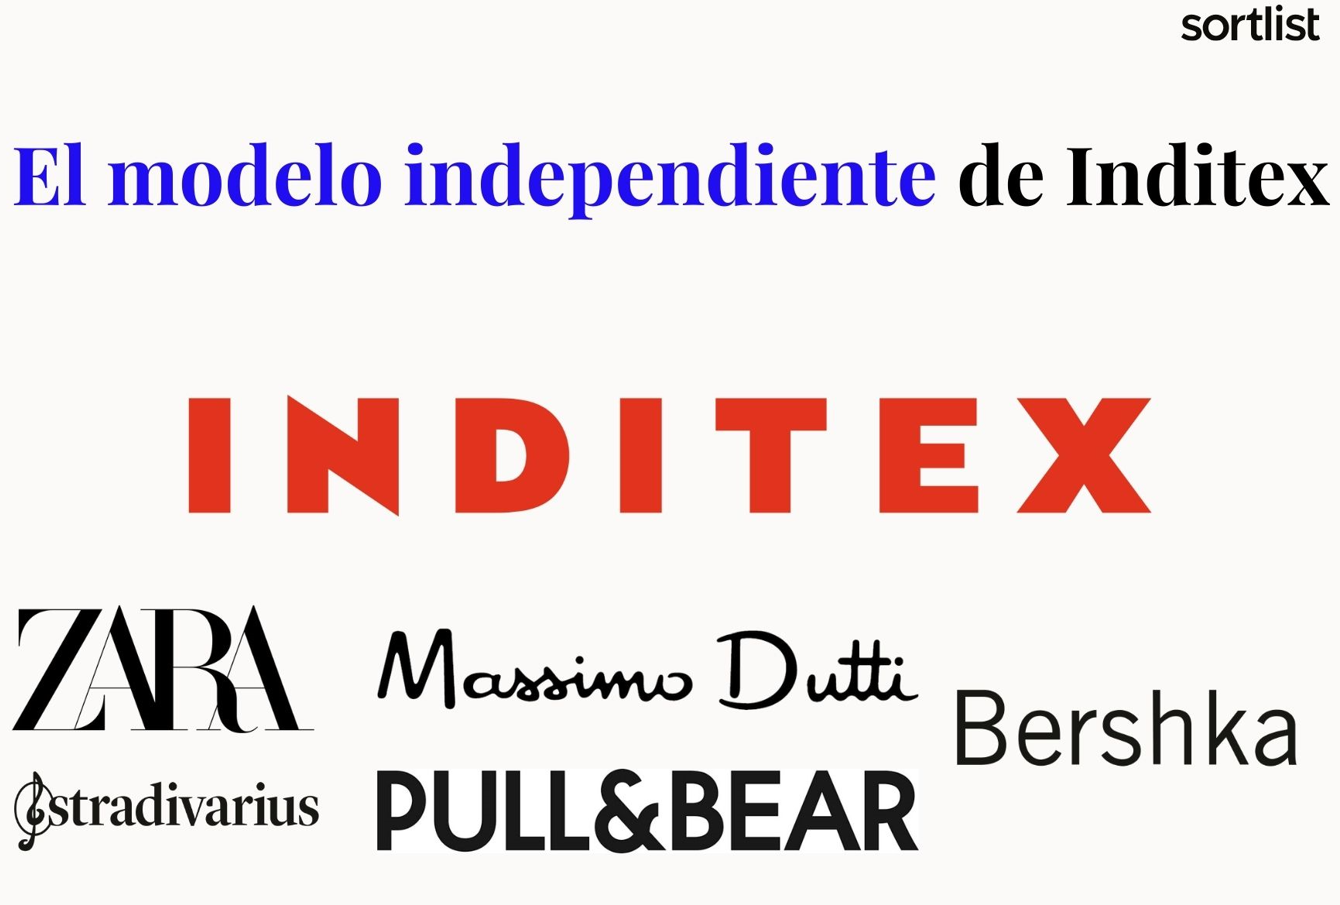 El modelo independiente de arquitectura de marca según Inditex